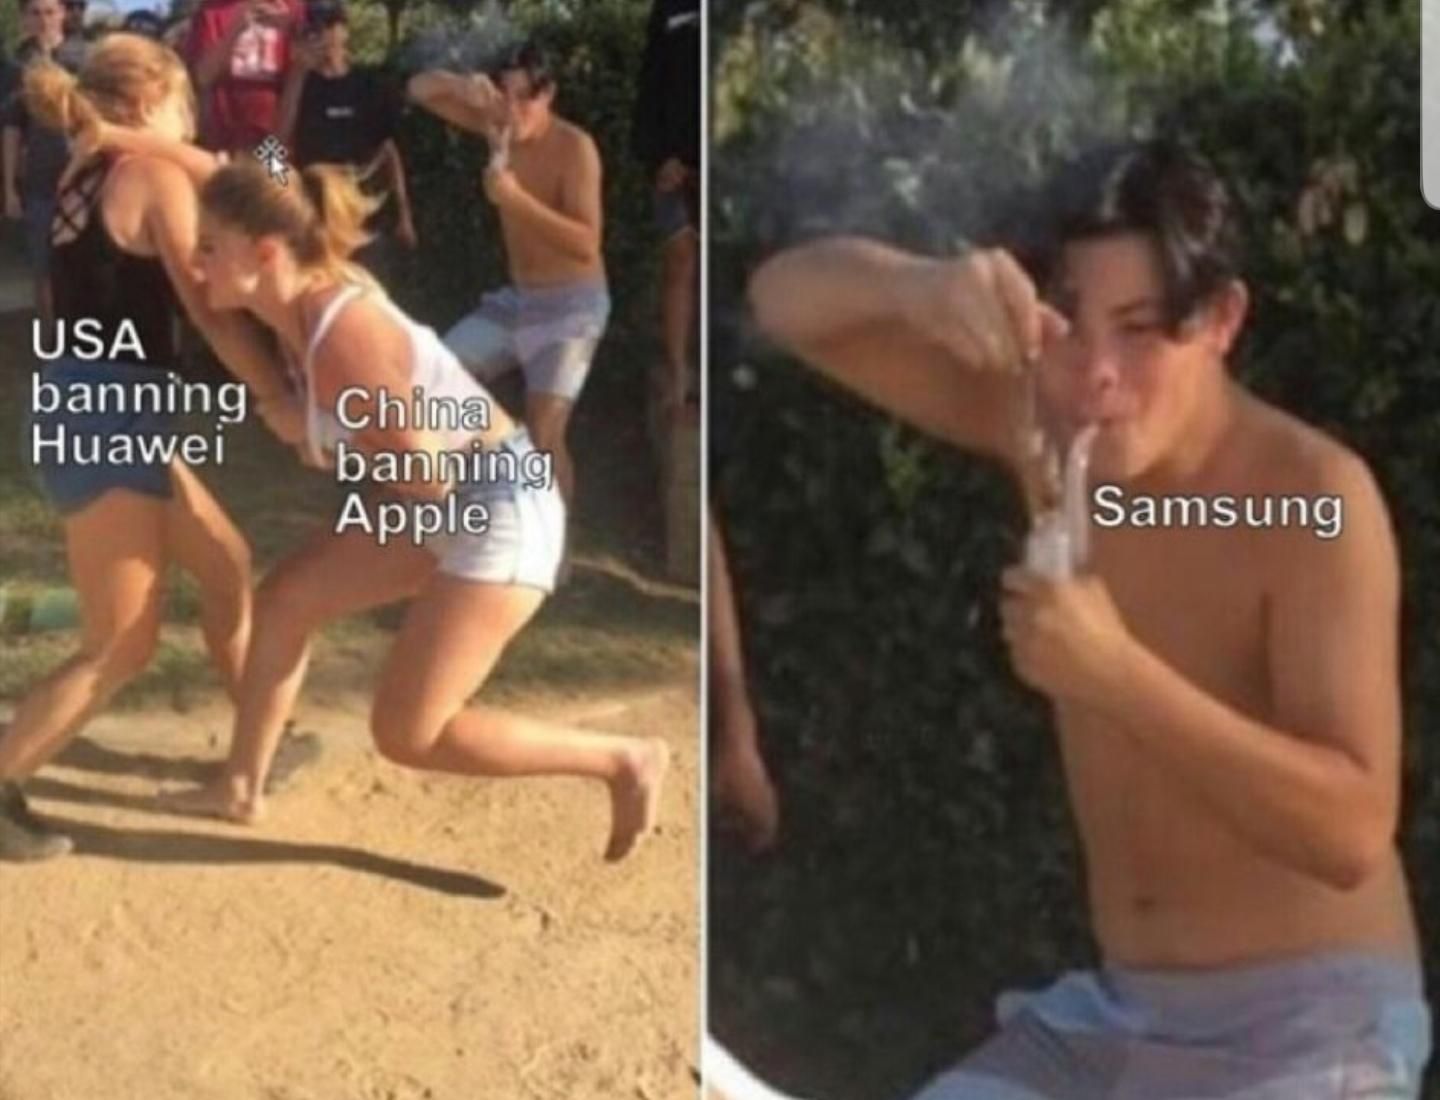 Samsung knows best